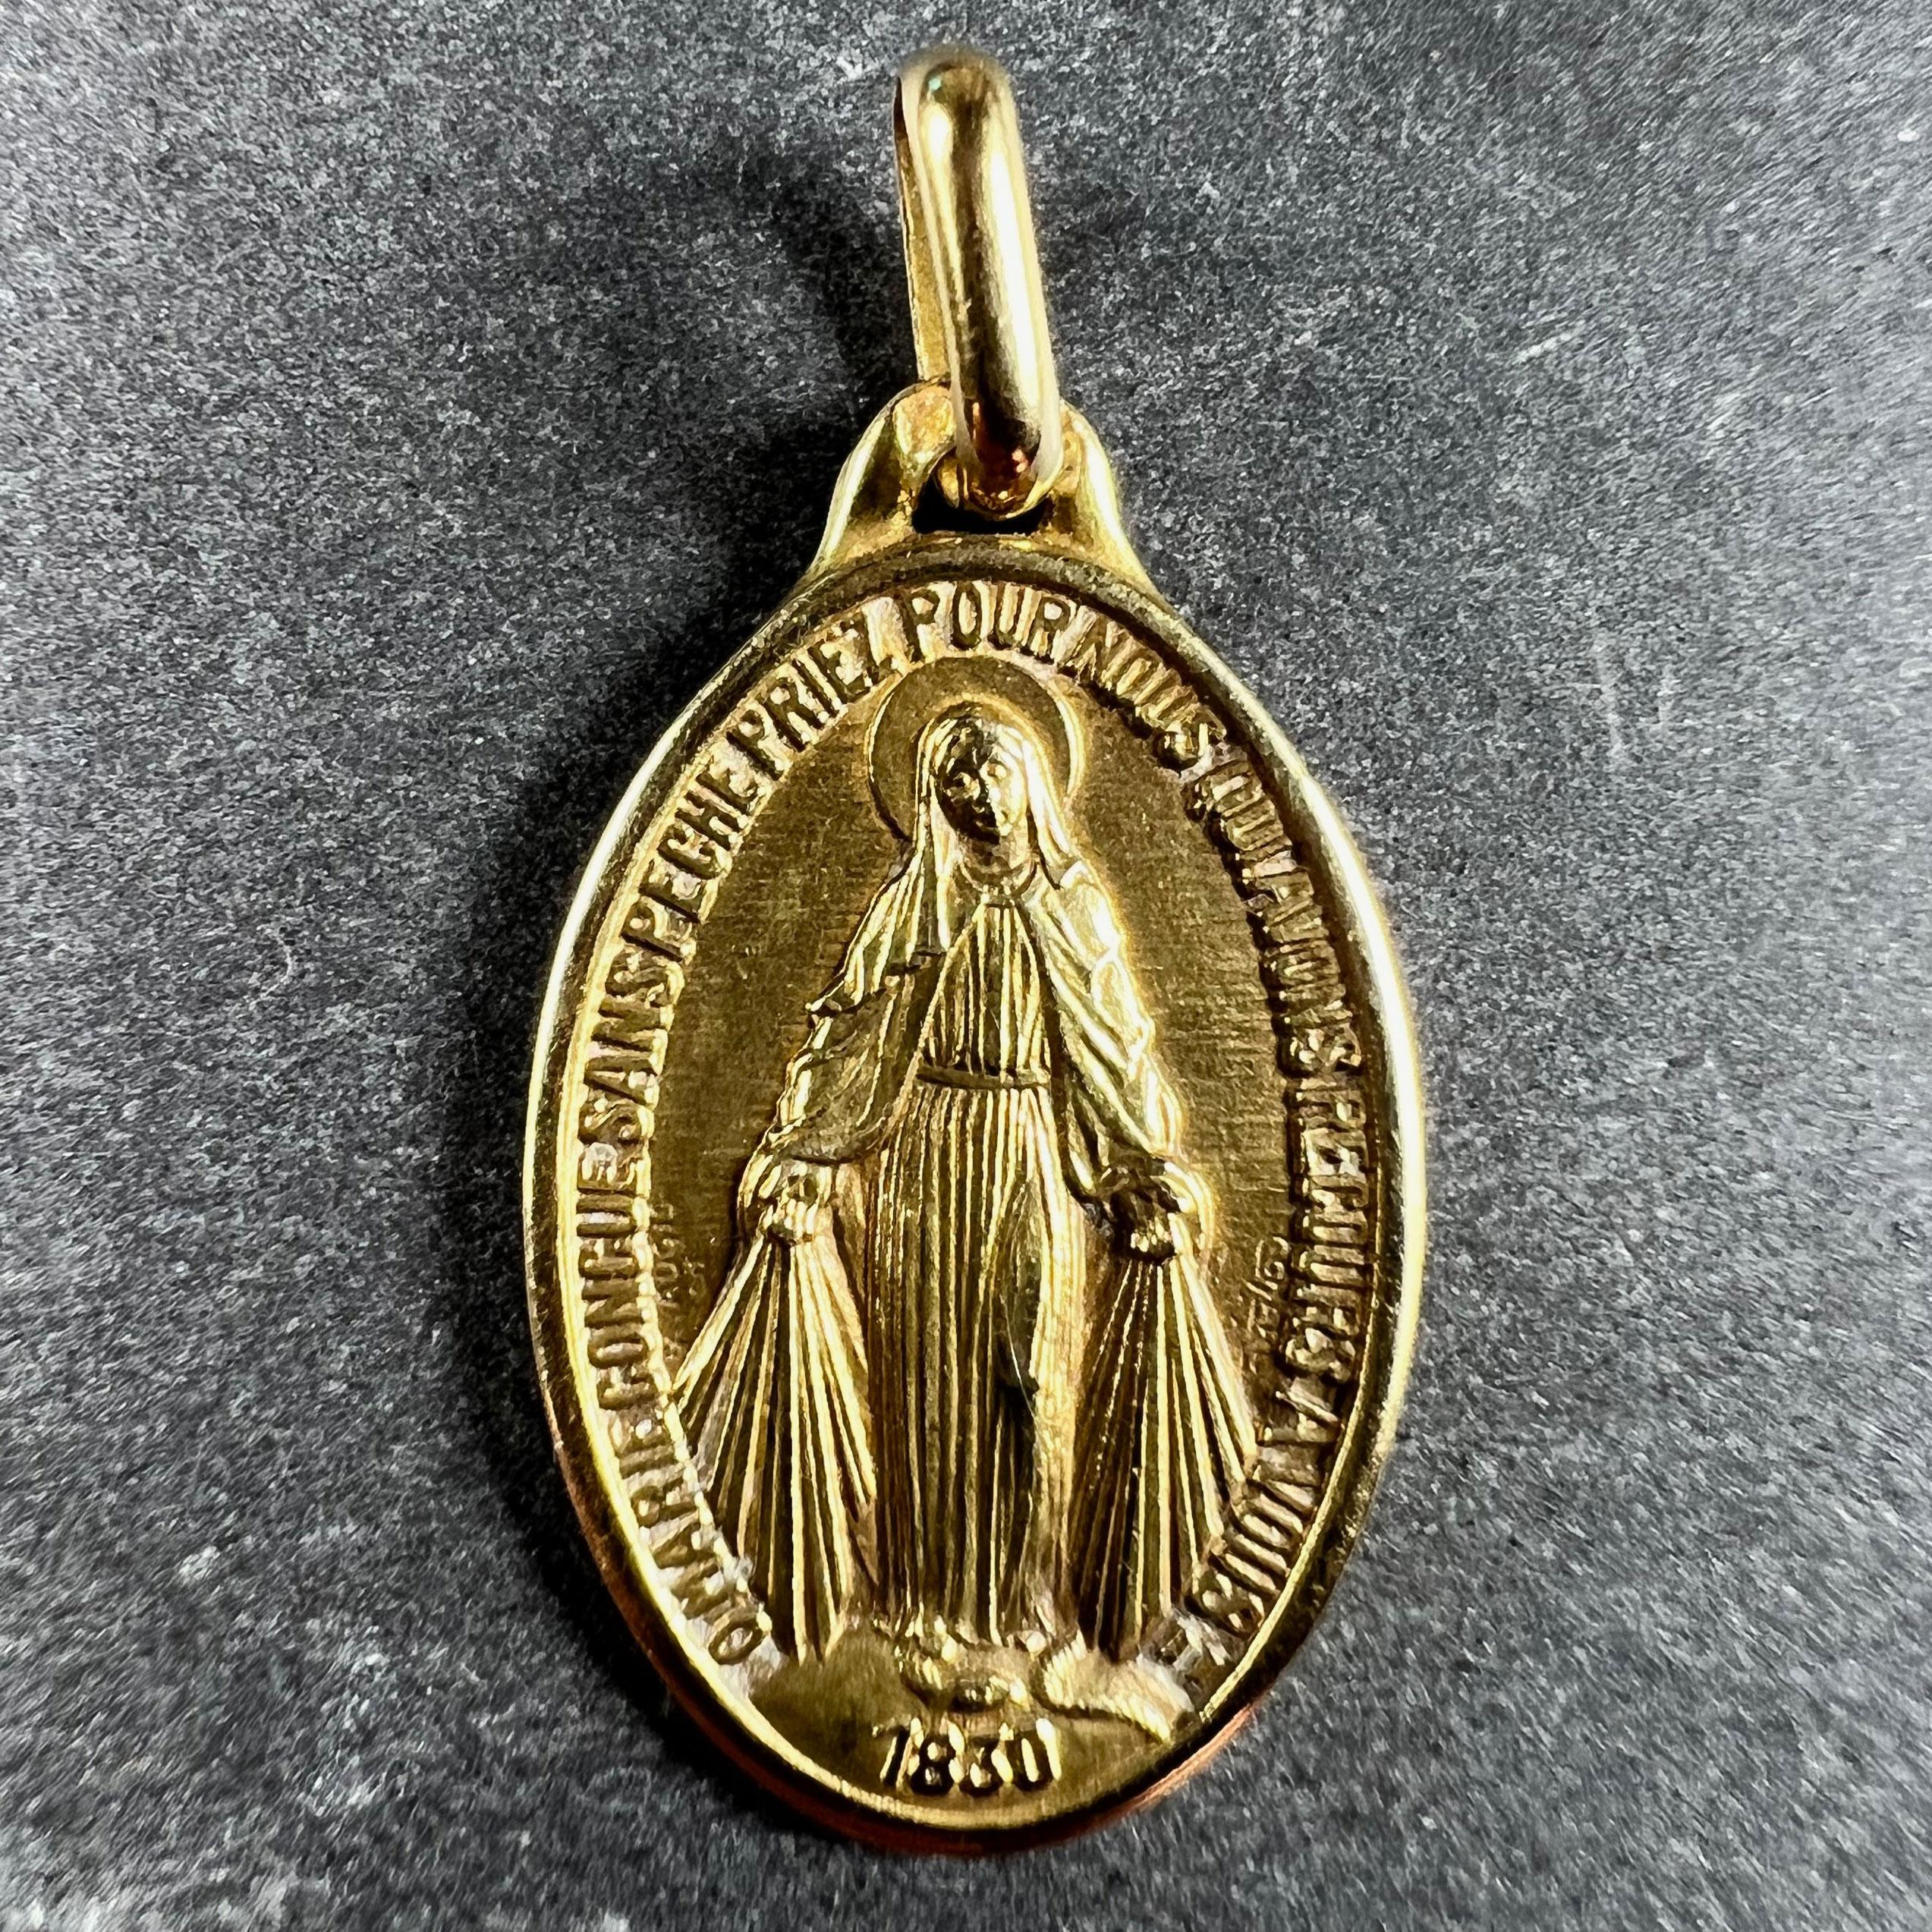 Pendentif à charme en or jaune 18 carats (18K) conçu comme la Médaille Miraculeuse par Augis. La médaille représente la Vierge Marie debout sur un globe au-dessus de la date 1830, écrasant un serpent sous ses pieds et des rayons jaillissant de ses